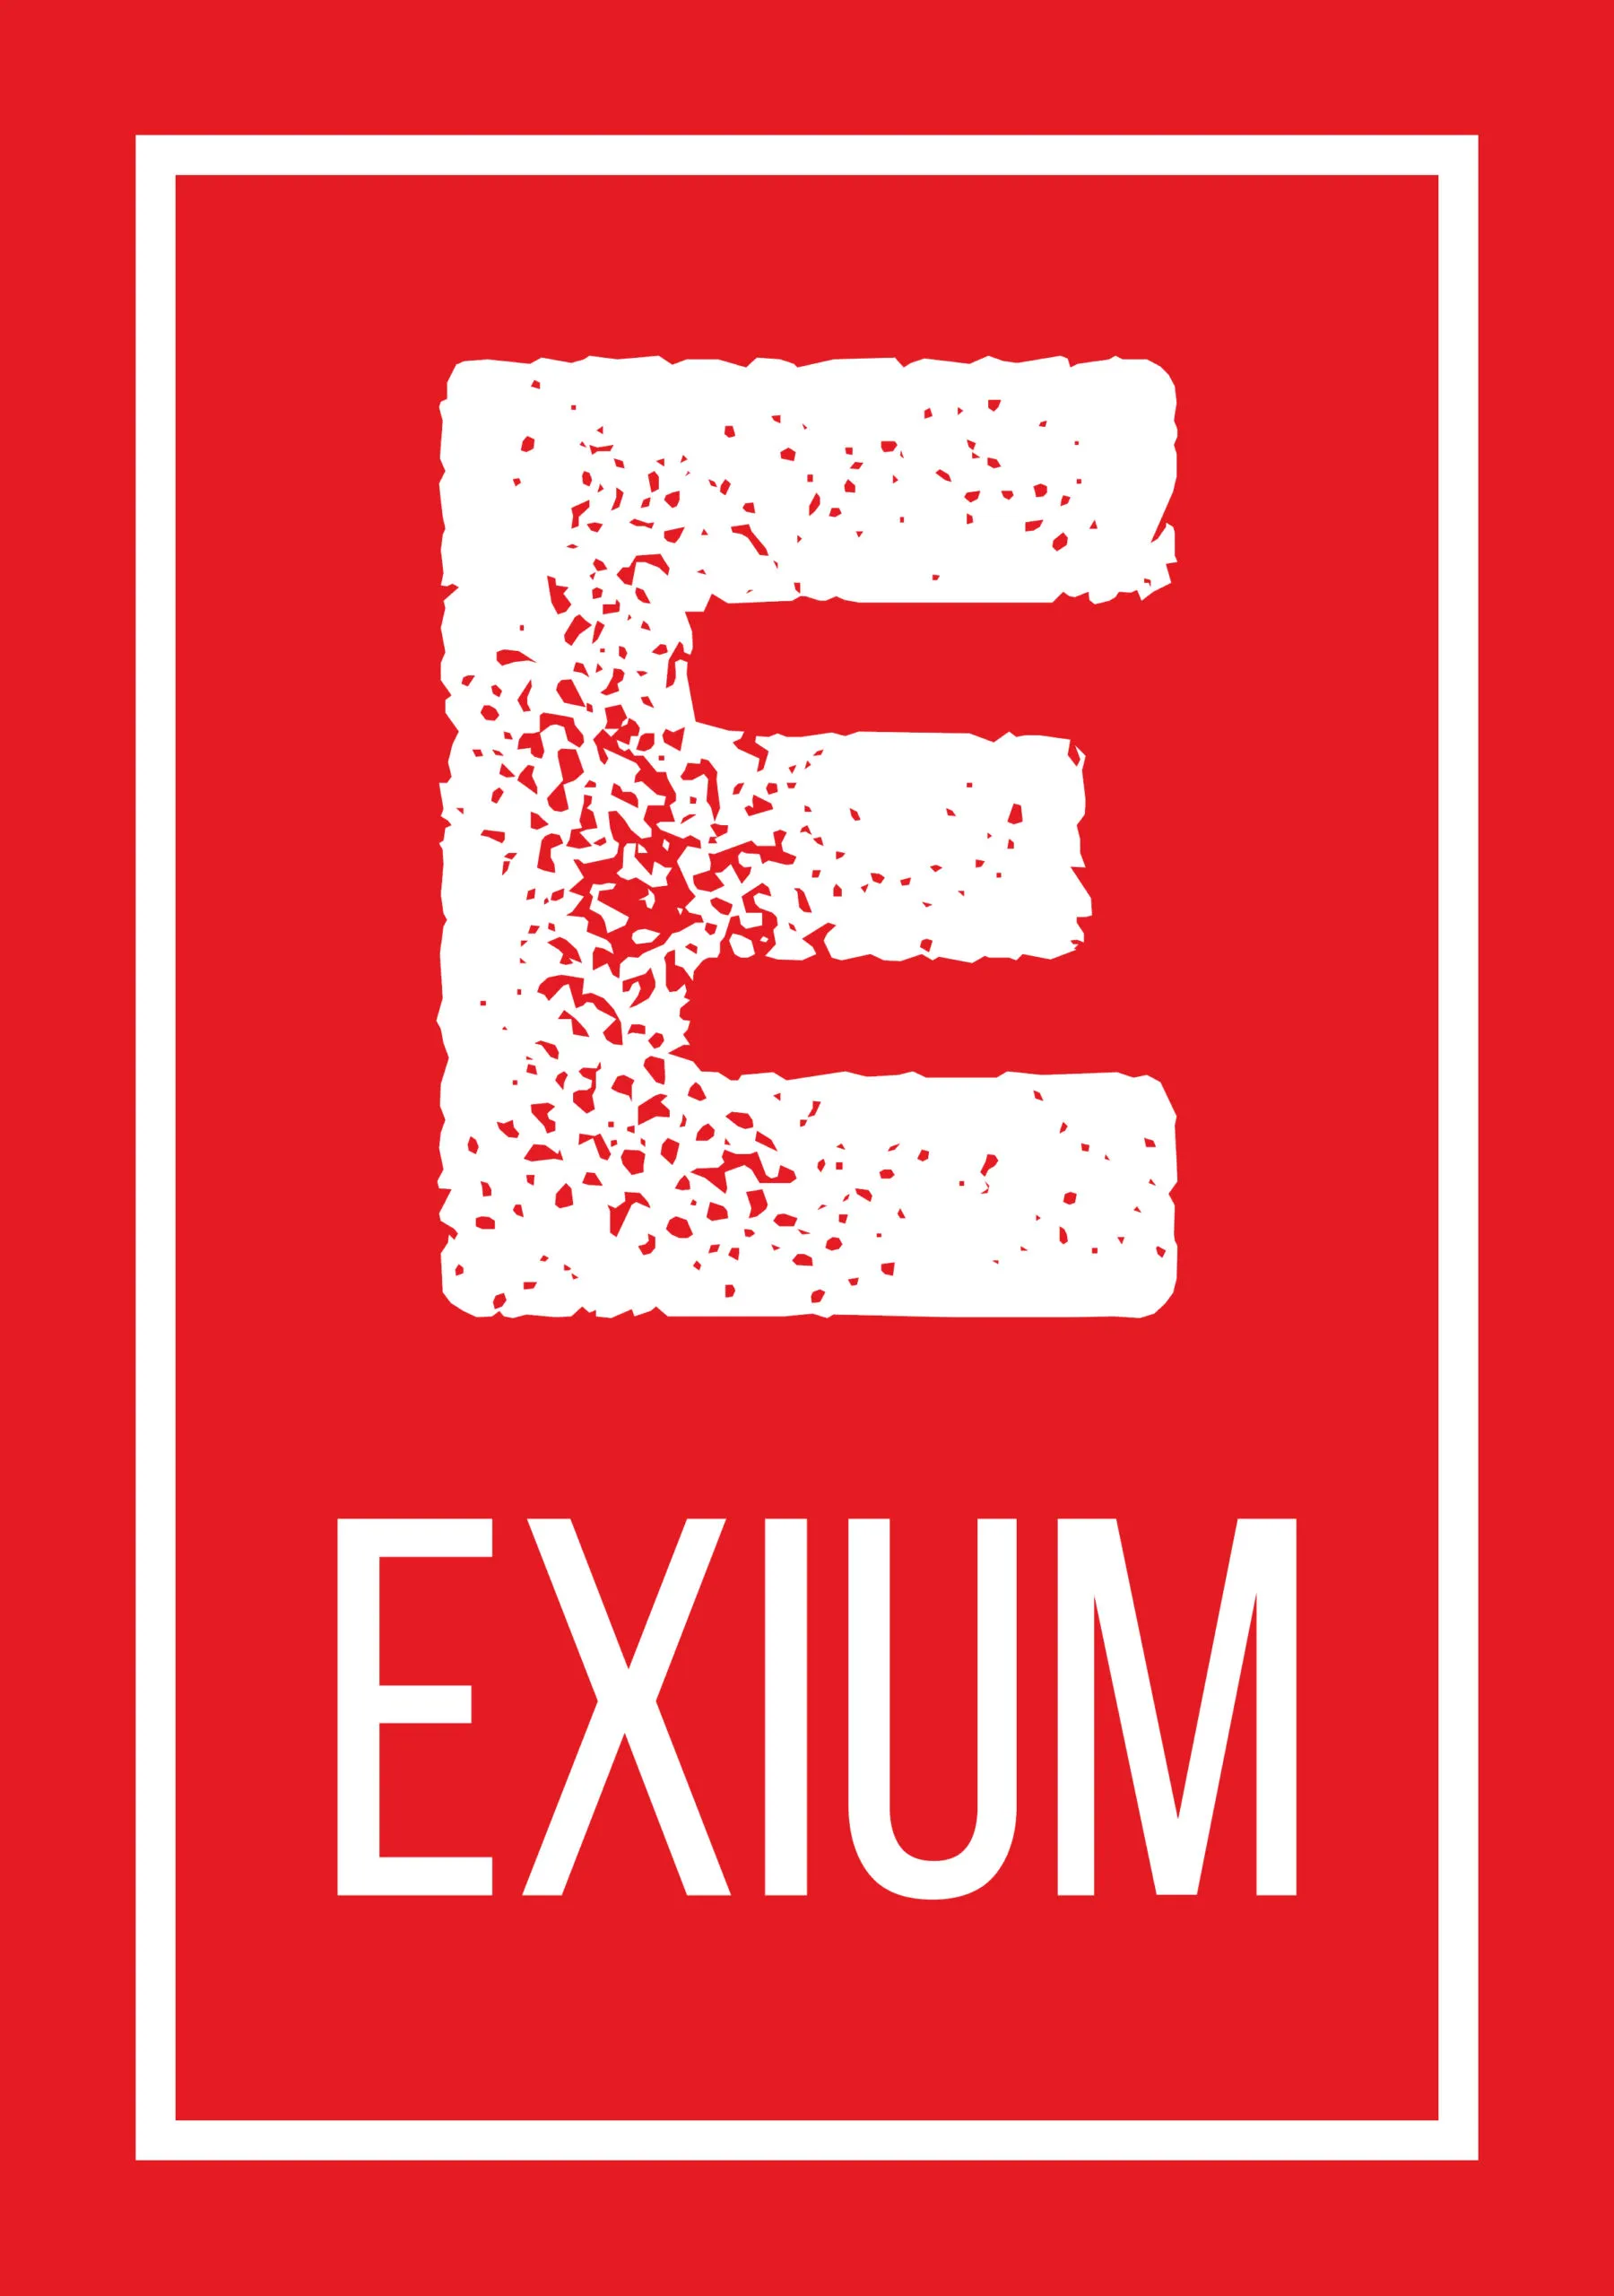 Exium (image)